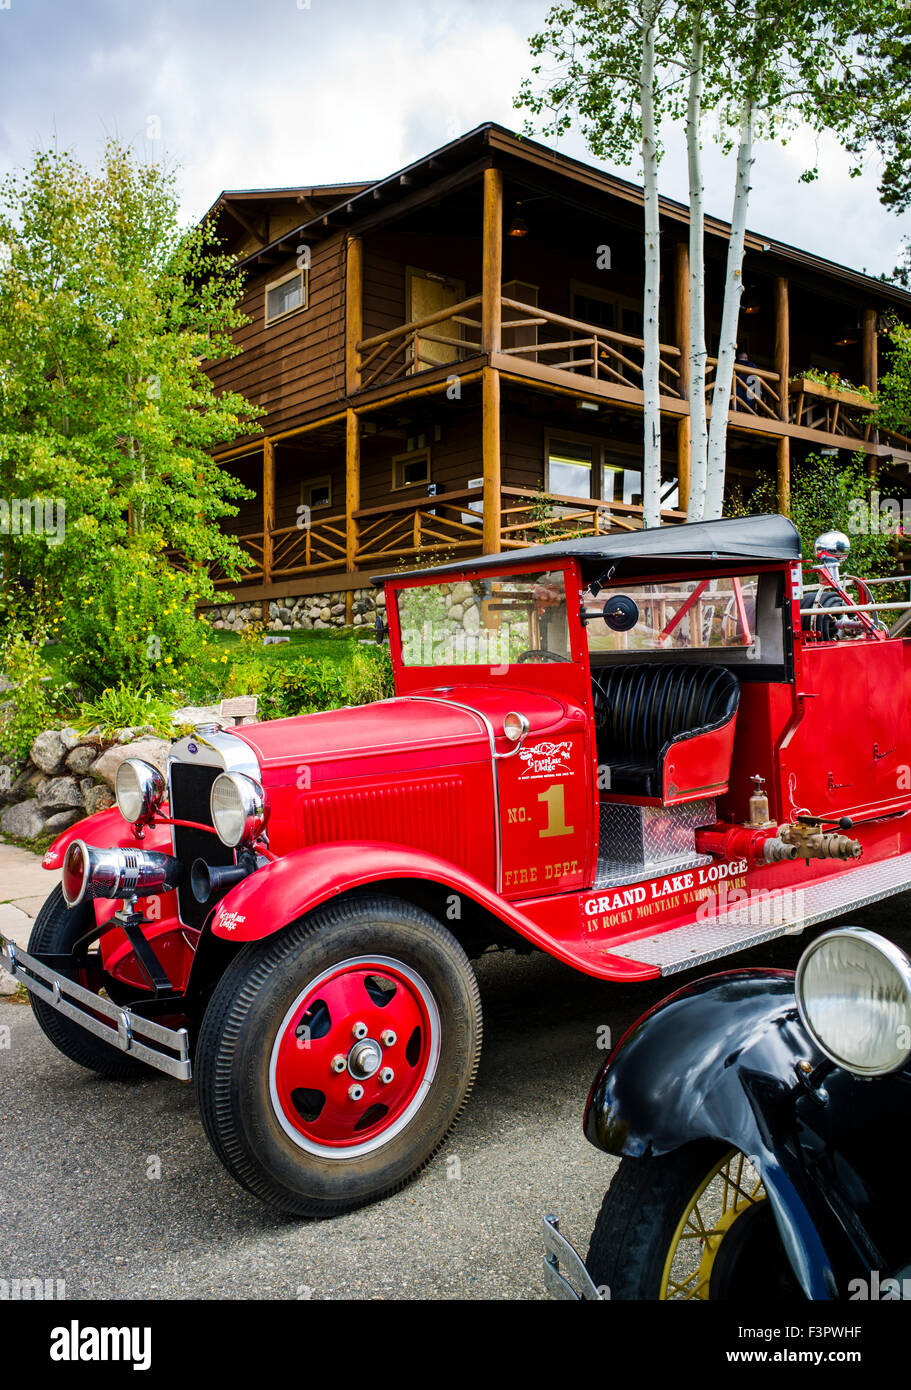 Deux anciens vintage automobiles Ford ; historique Grand Lake Lodge, près de Rocky Mountain National Park, Colorado, USA Banque D'Images